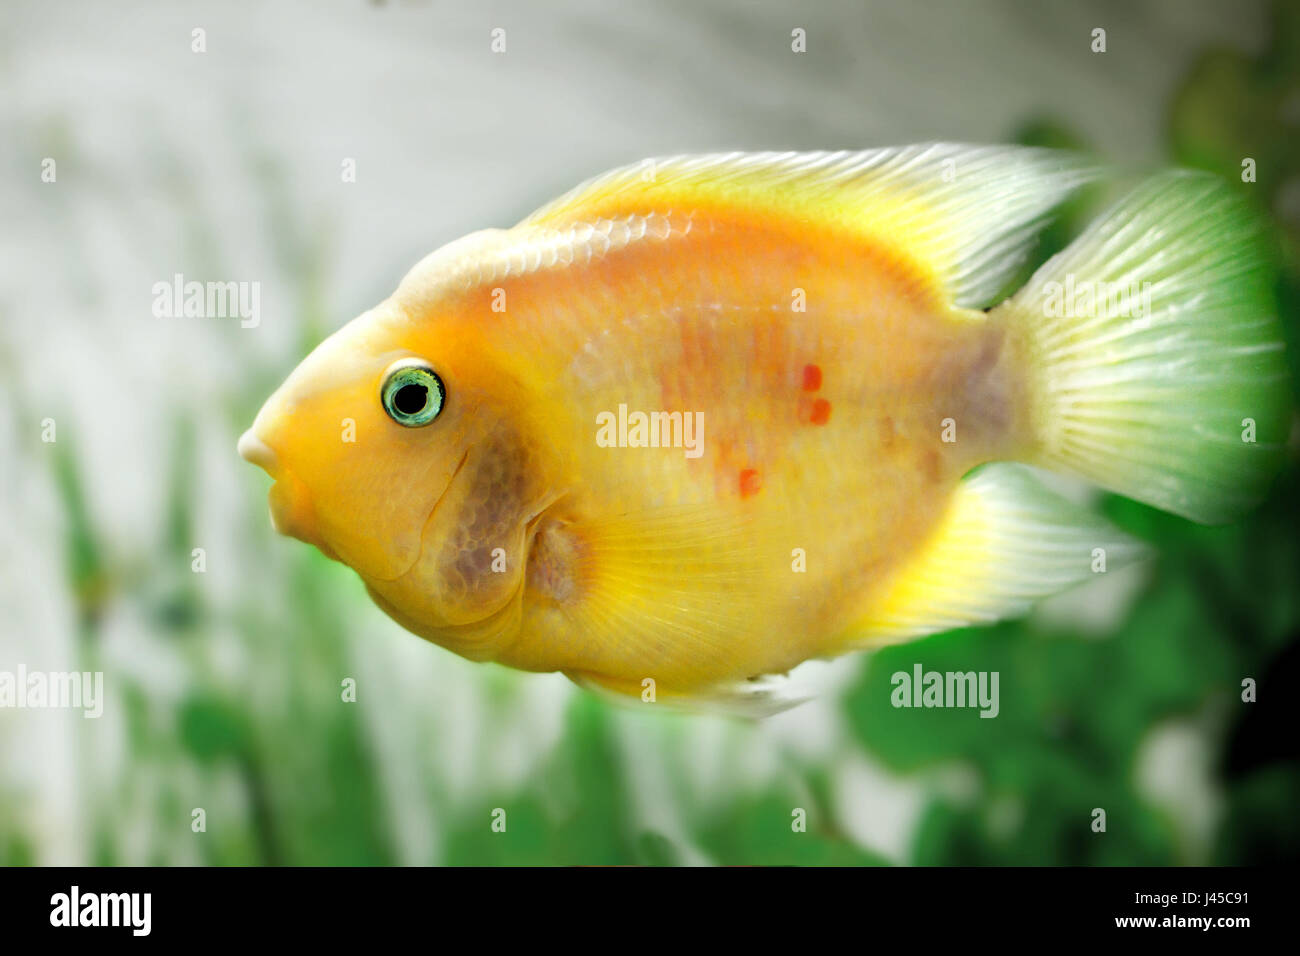 image of a beautiful aquarium fish Amphilophus citrinellus Stock Photo